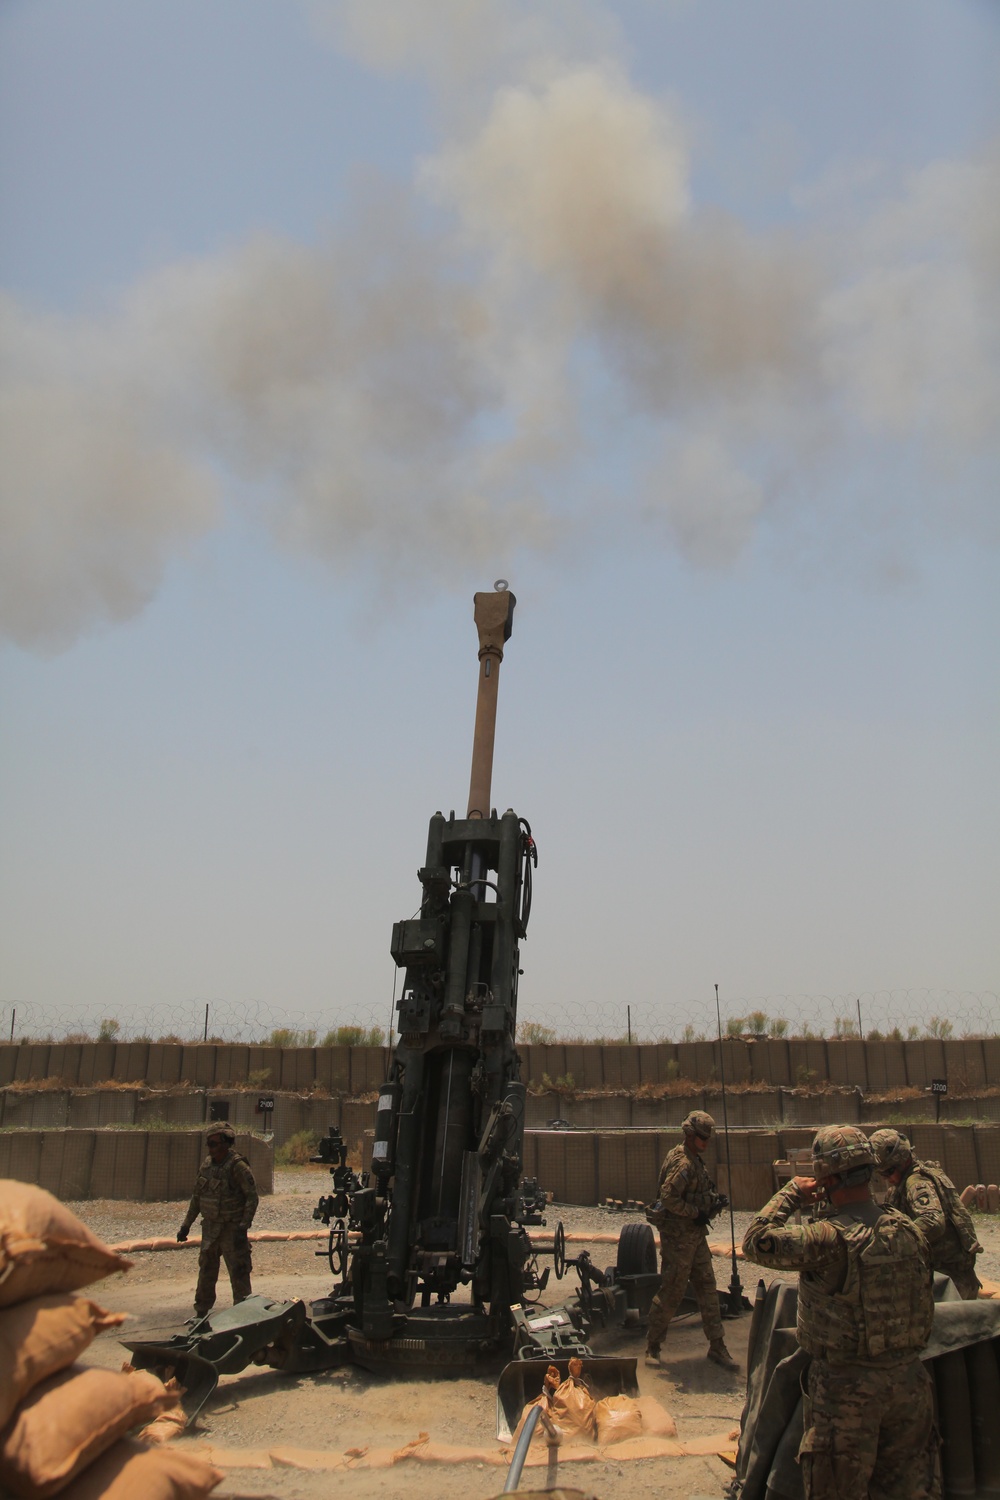 Artillery drills